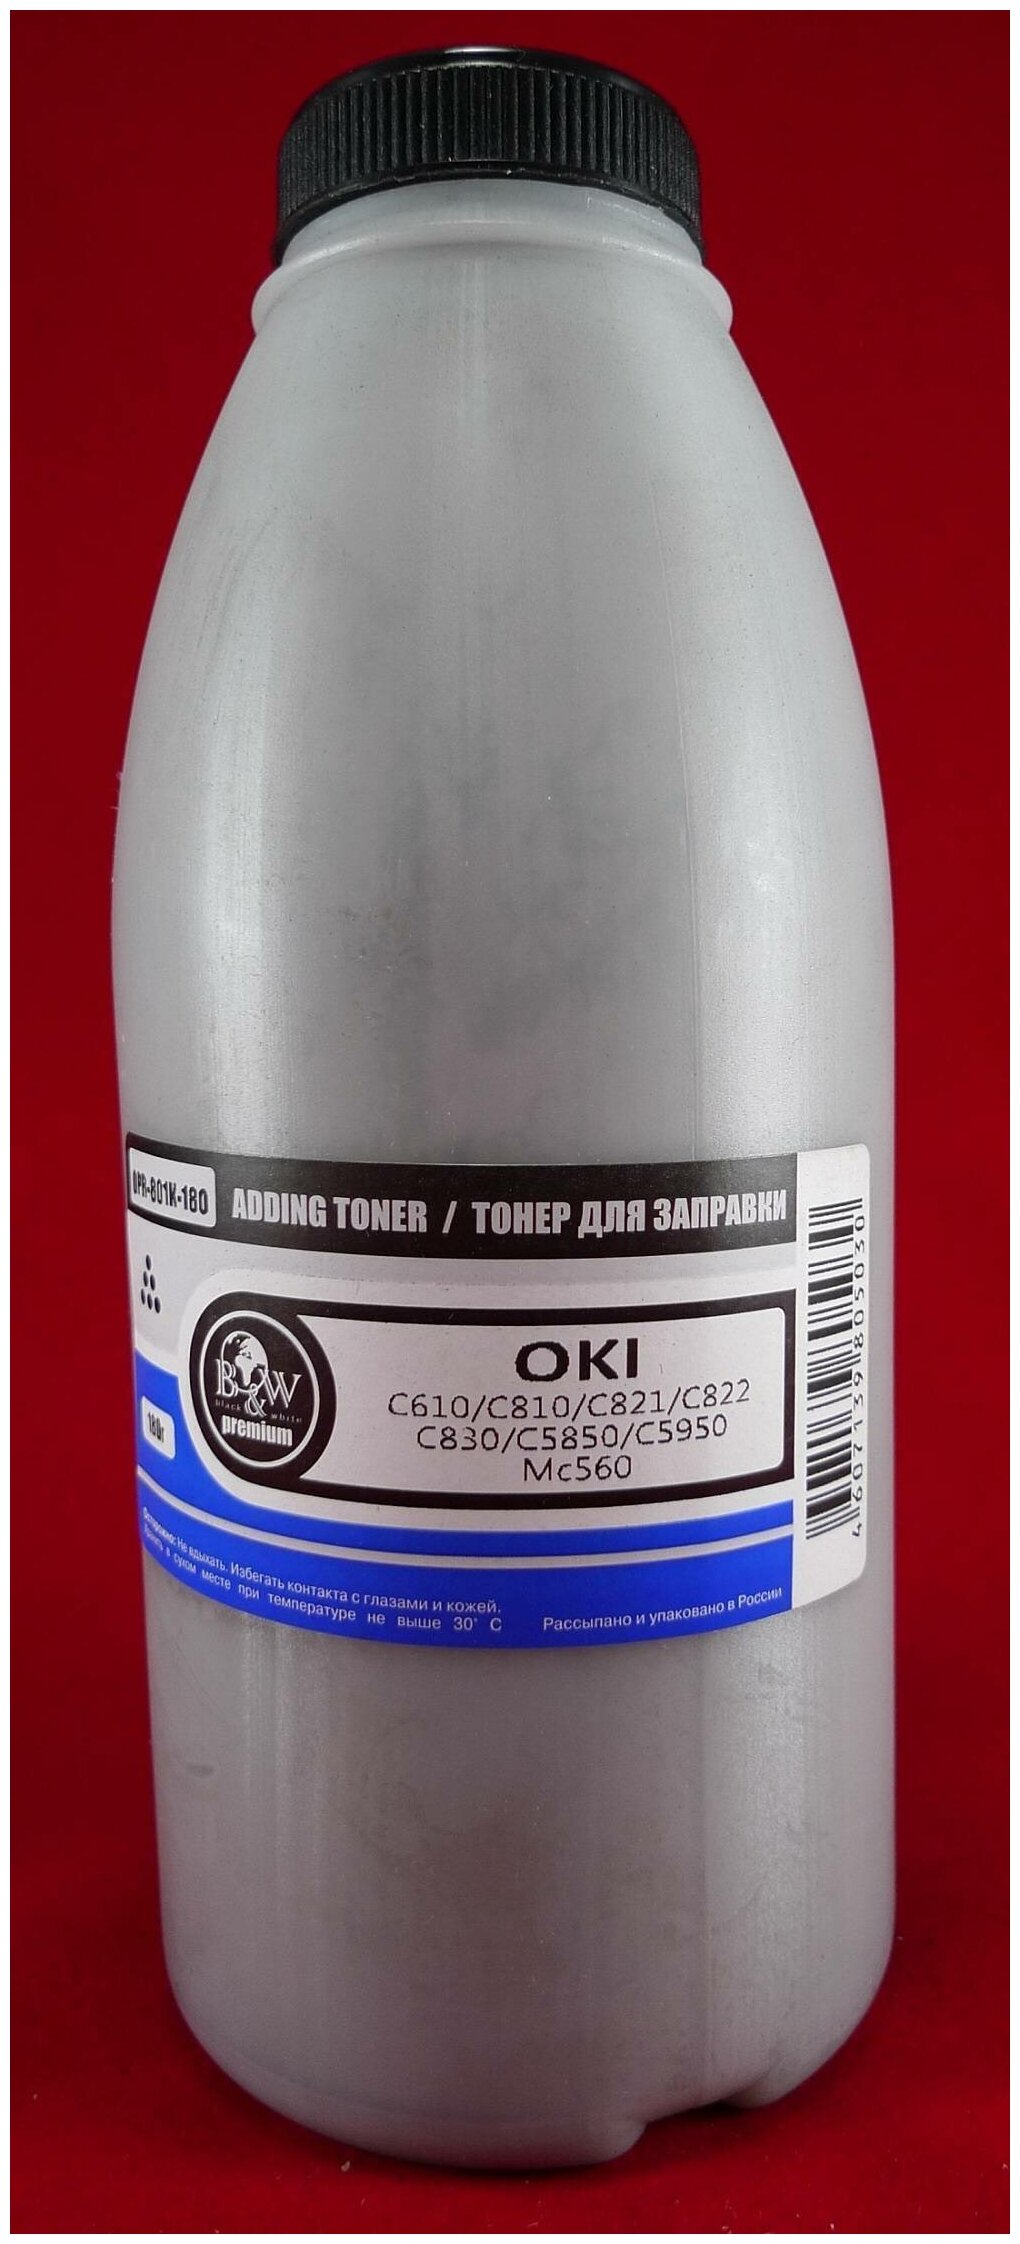 Тонер B&W OPR-801K-180, бутыль 180 г, черный, совместимый для Oki C610/C810/C821/C822/C830/C5850/C5950/MC560, Premium